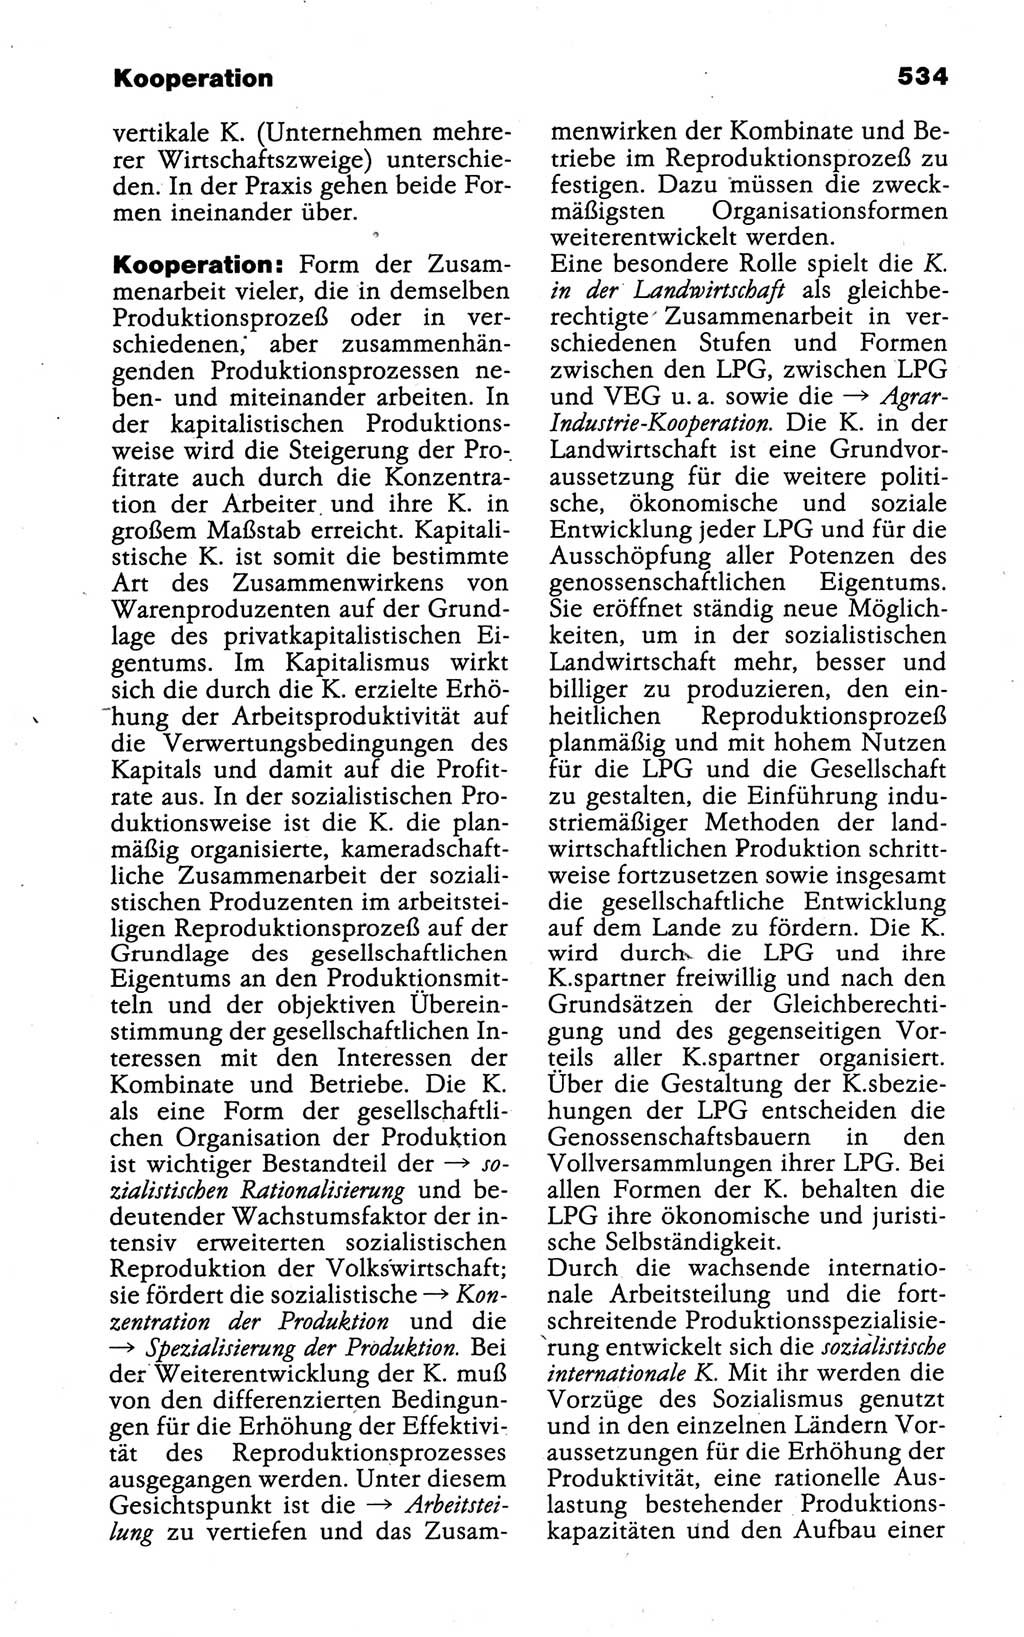 Kleines politisches Wörterbuch [Deutsche Demokratische Republik (DDR)] 1988, Seite 534 (Kl. pol. Wb. DDR 1988, S. 534)